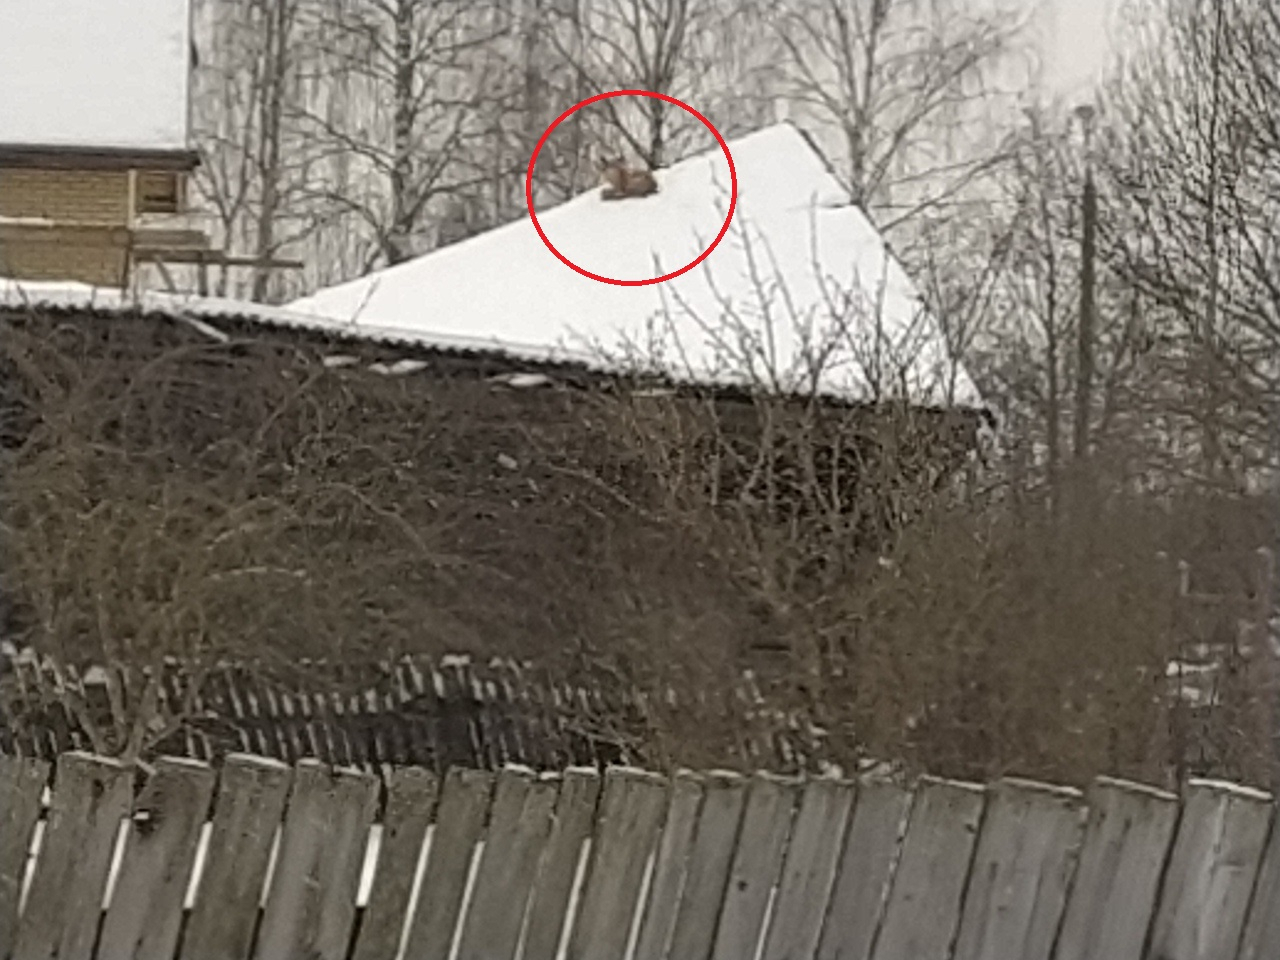 Хищный зверь на крыше: шок-видео из ярославской глубинки